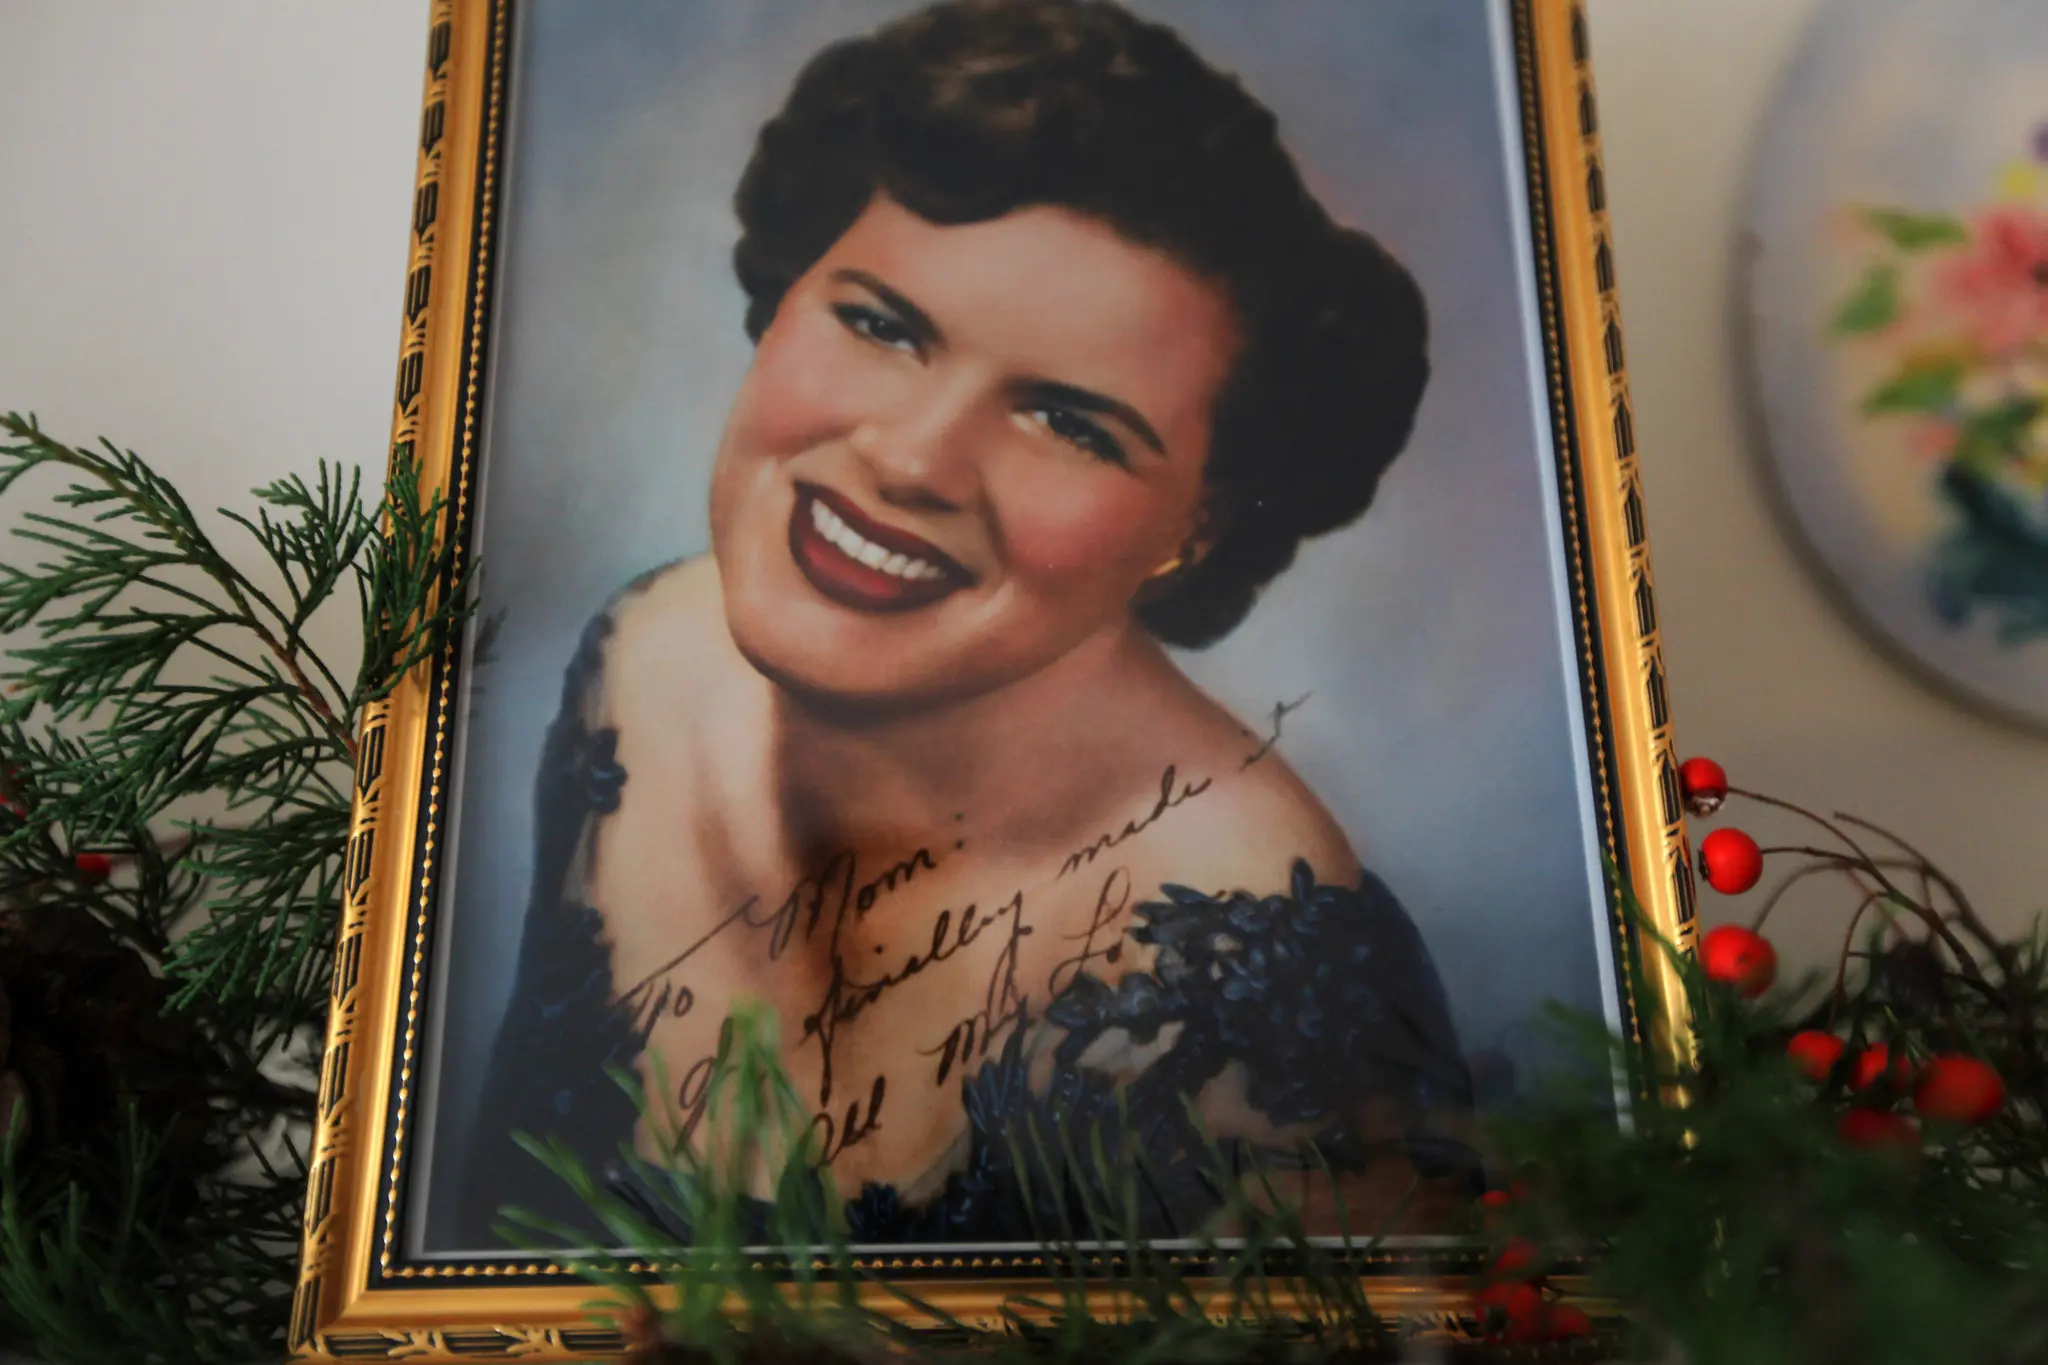 Patsy Cline morreu em um acidente de avião aos 30 anos, apenas seis anos depois de vencer um programa de talentos na TV em 1957. (Crédito da fotografia: Nicole Bengiveno/The New York Times)